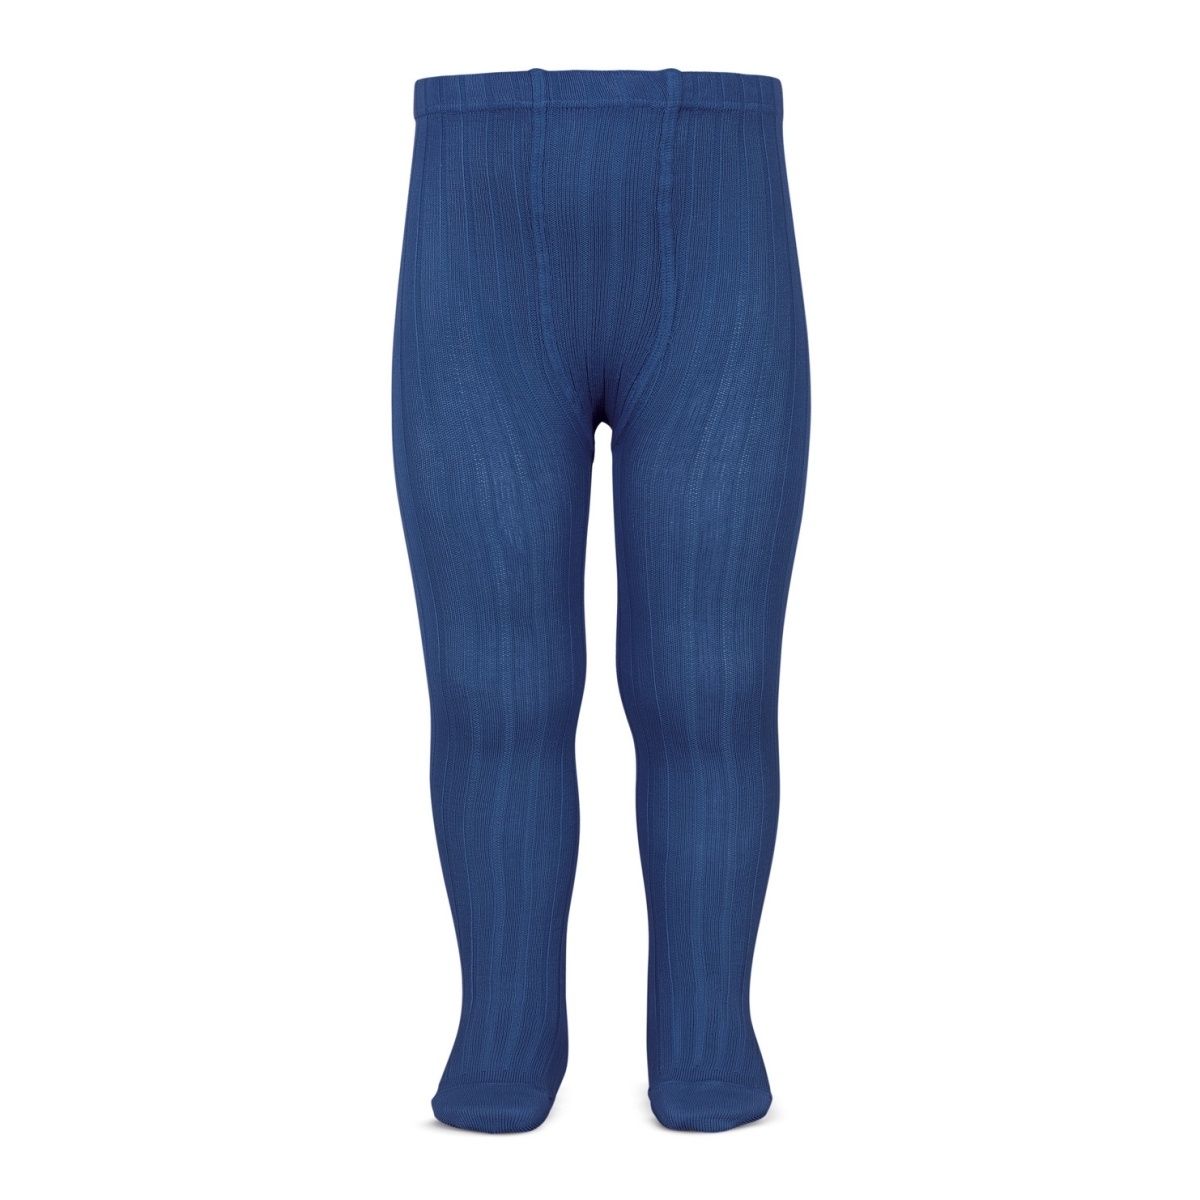 Condor - Wide Ribbed Cotton Tights indigo blue - タイツと靴下 - 2.016/1_473 